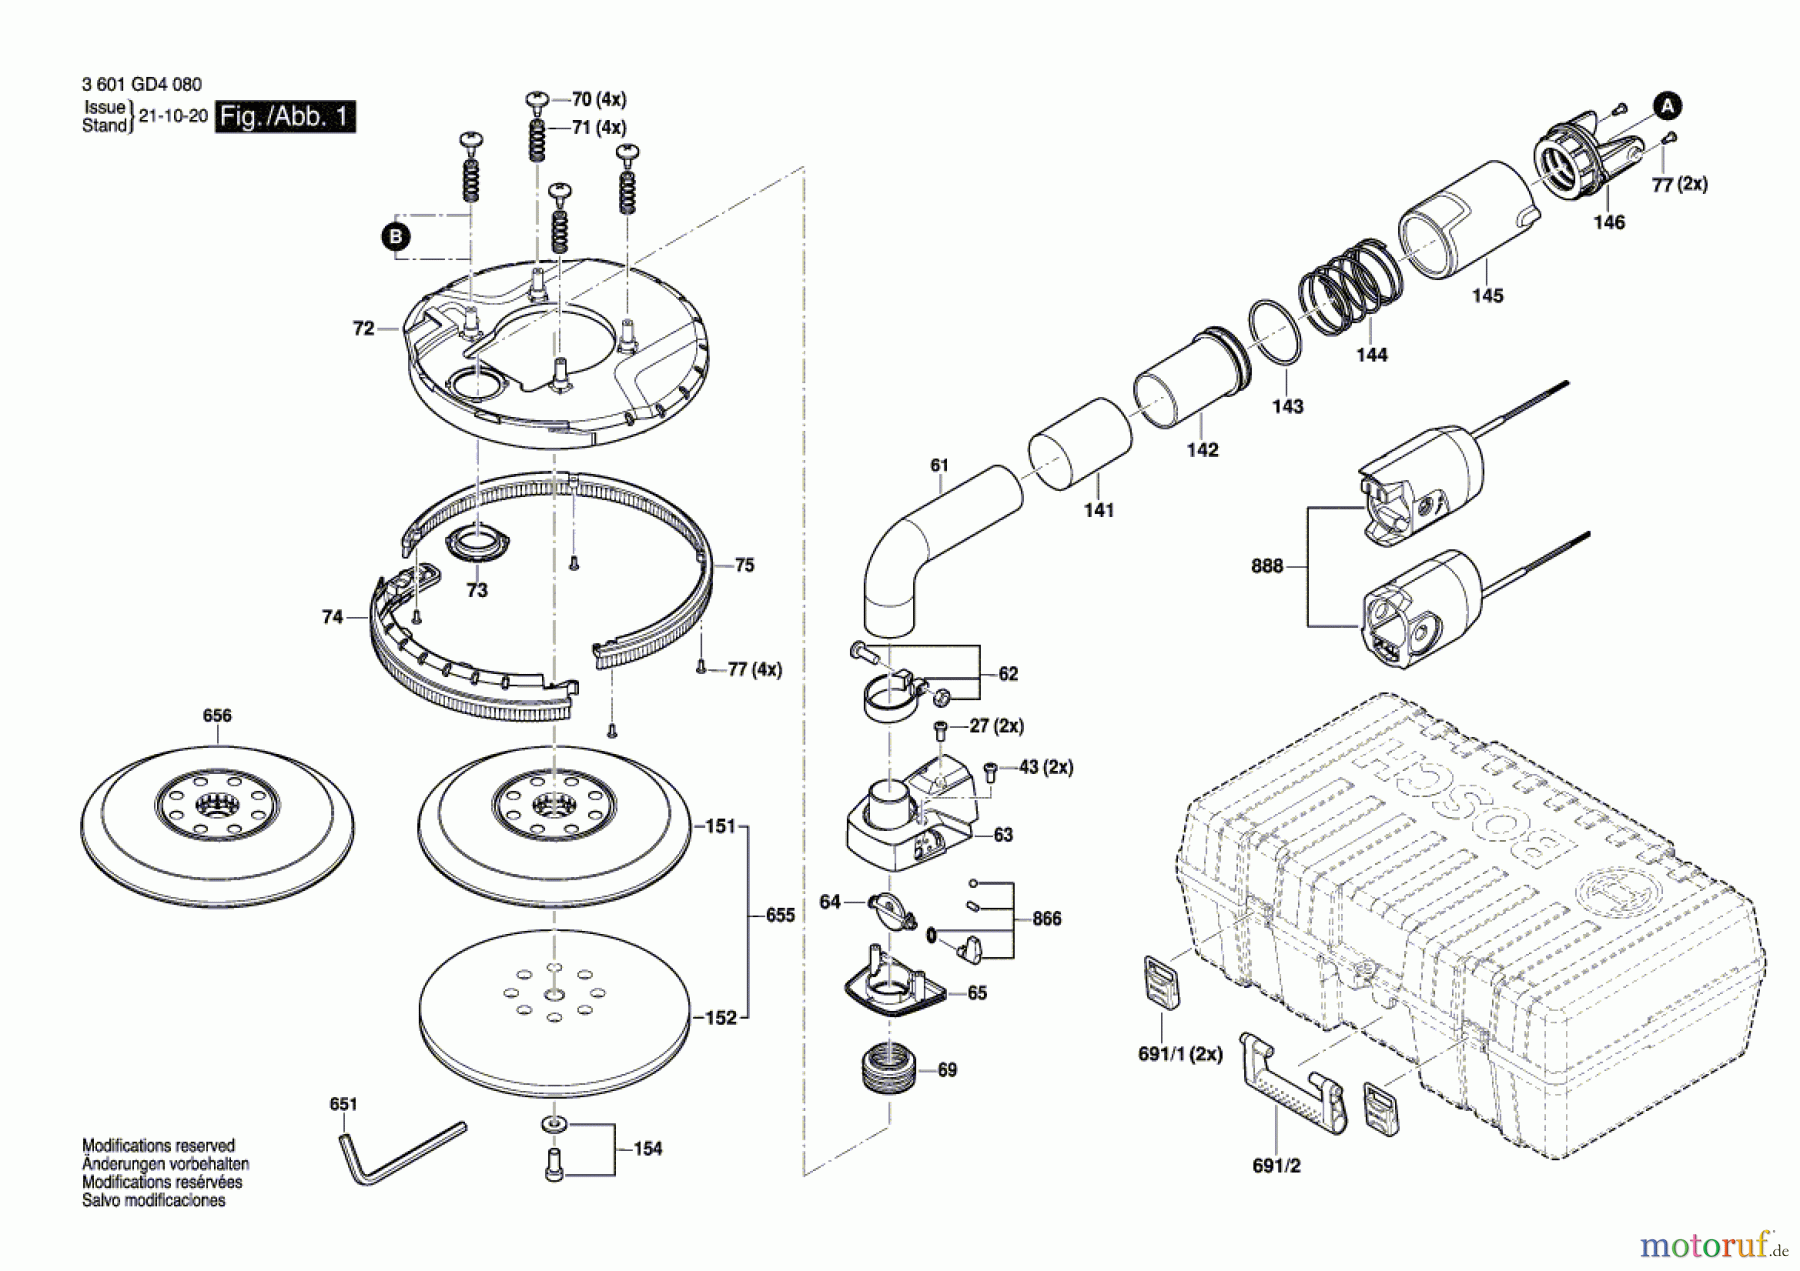  Bosch Werkzeug Trockenbauschleifer GTR 55-225 Seite 1